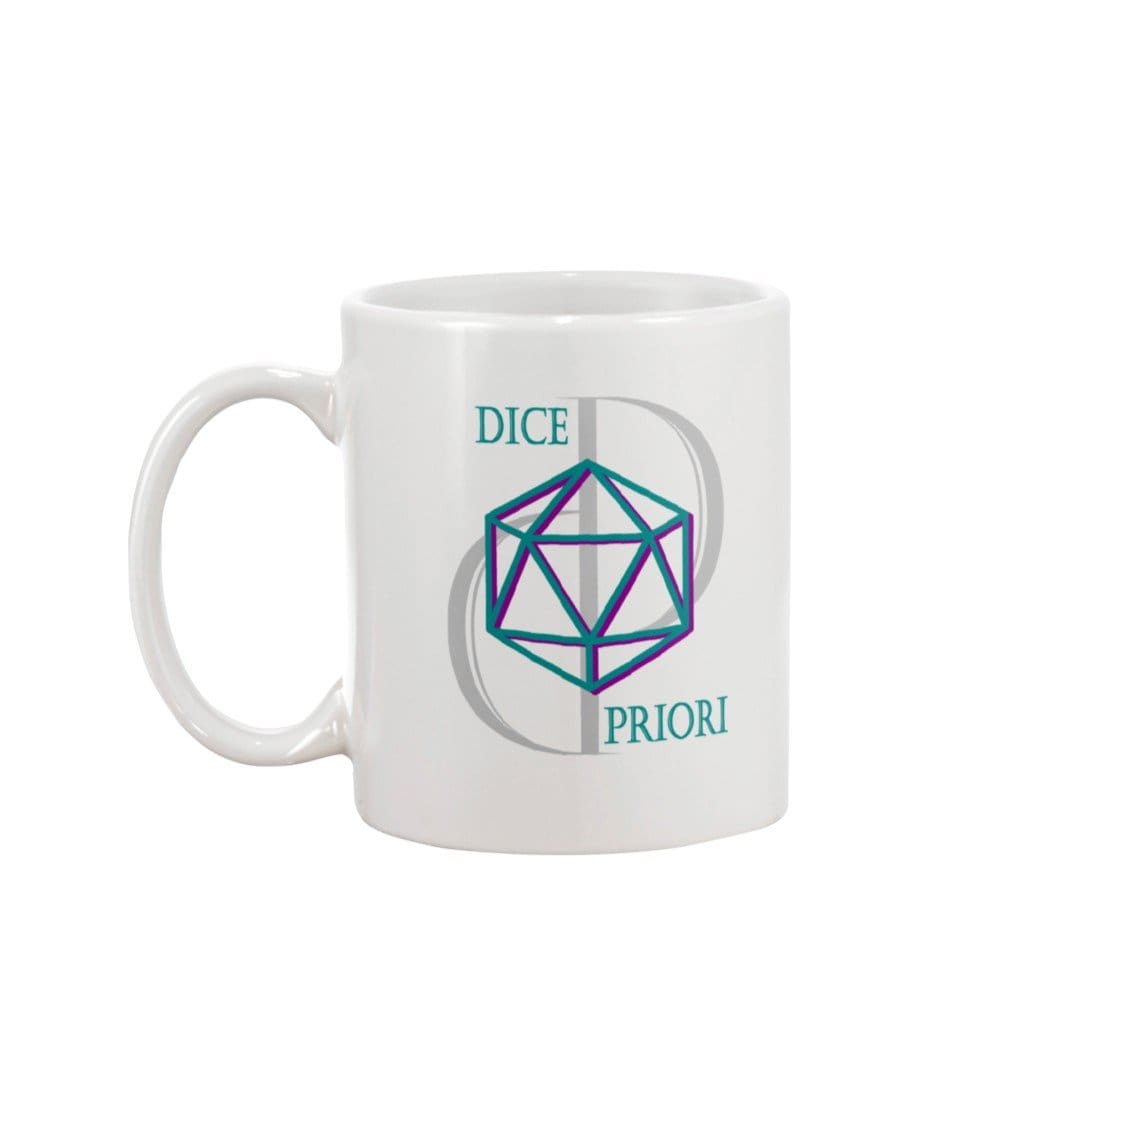 Dice Priori D20 Focus Text Logo 15oz Coffee Mug - Dice Priori